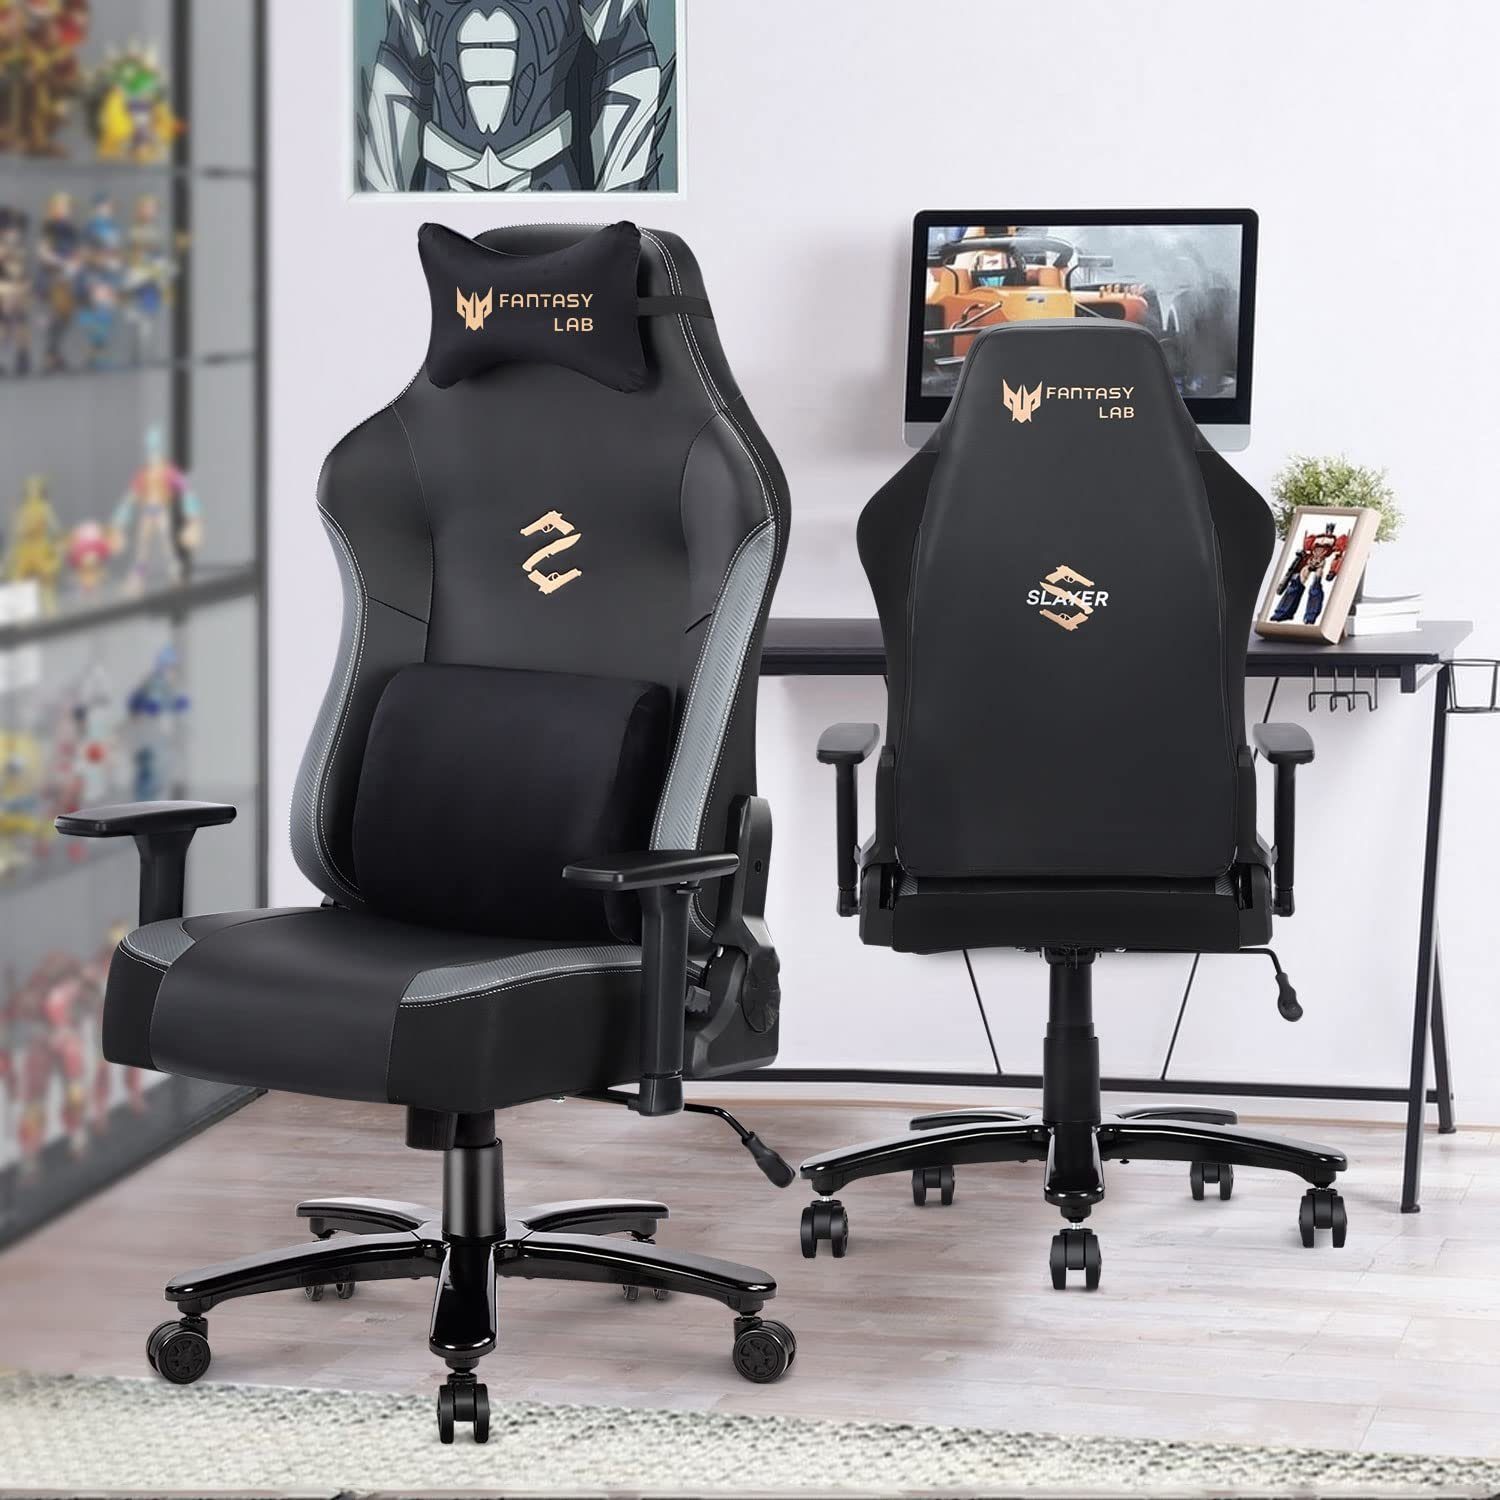 Wenta Gaming-Stuhl XL Bürostuhl mit Massage Lendenwirbelstütze 180KG Belastbarkeit, Ergonomischer PC Stuhl Racing Gamer Stuhl mit Wippfunktion